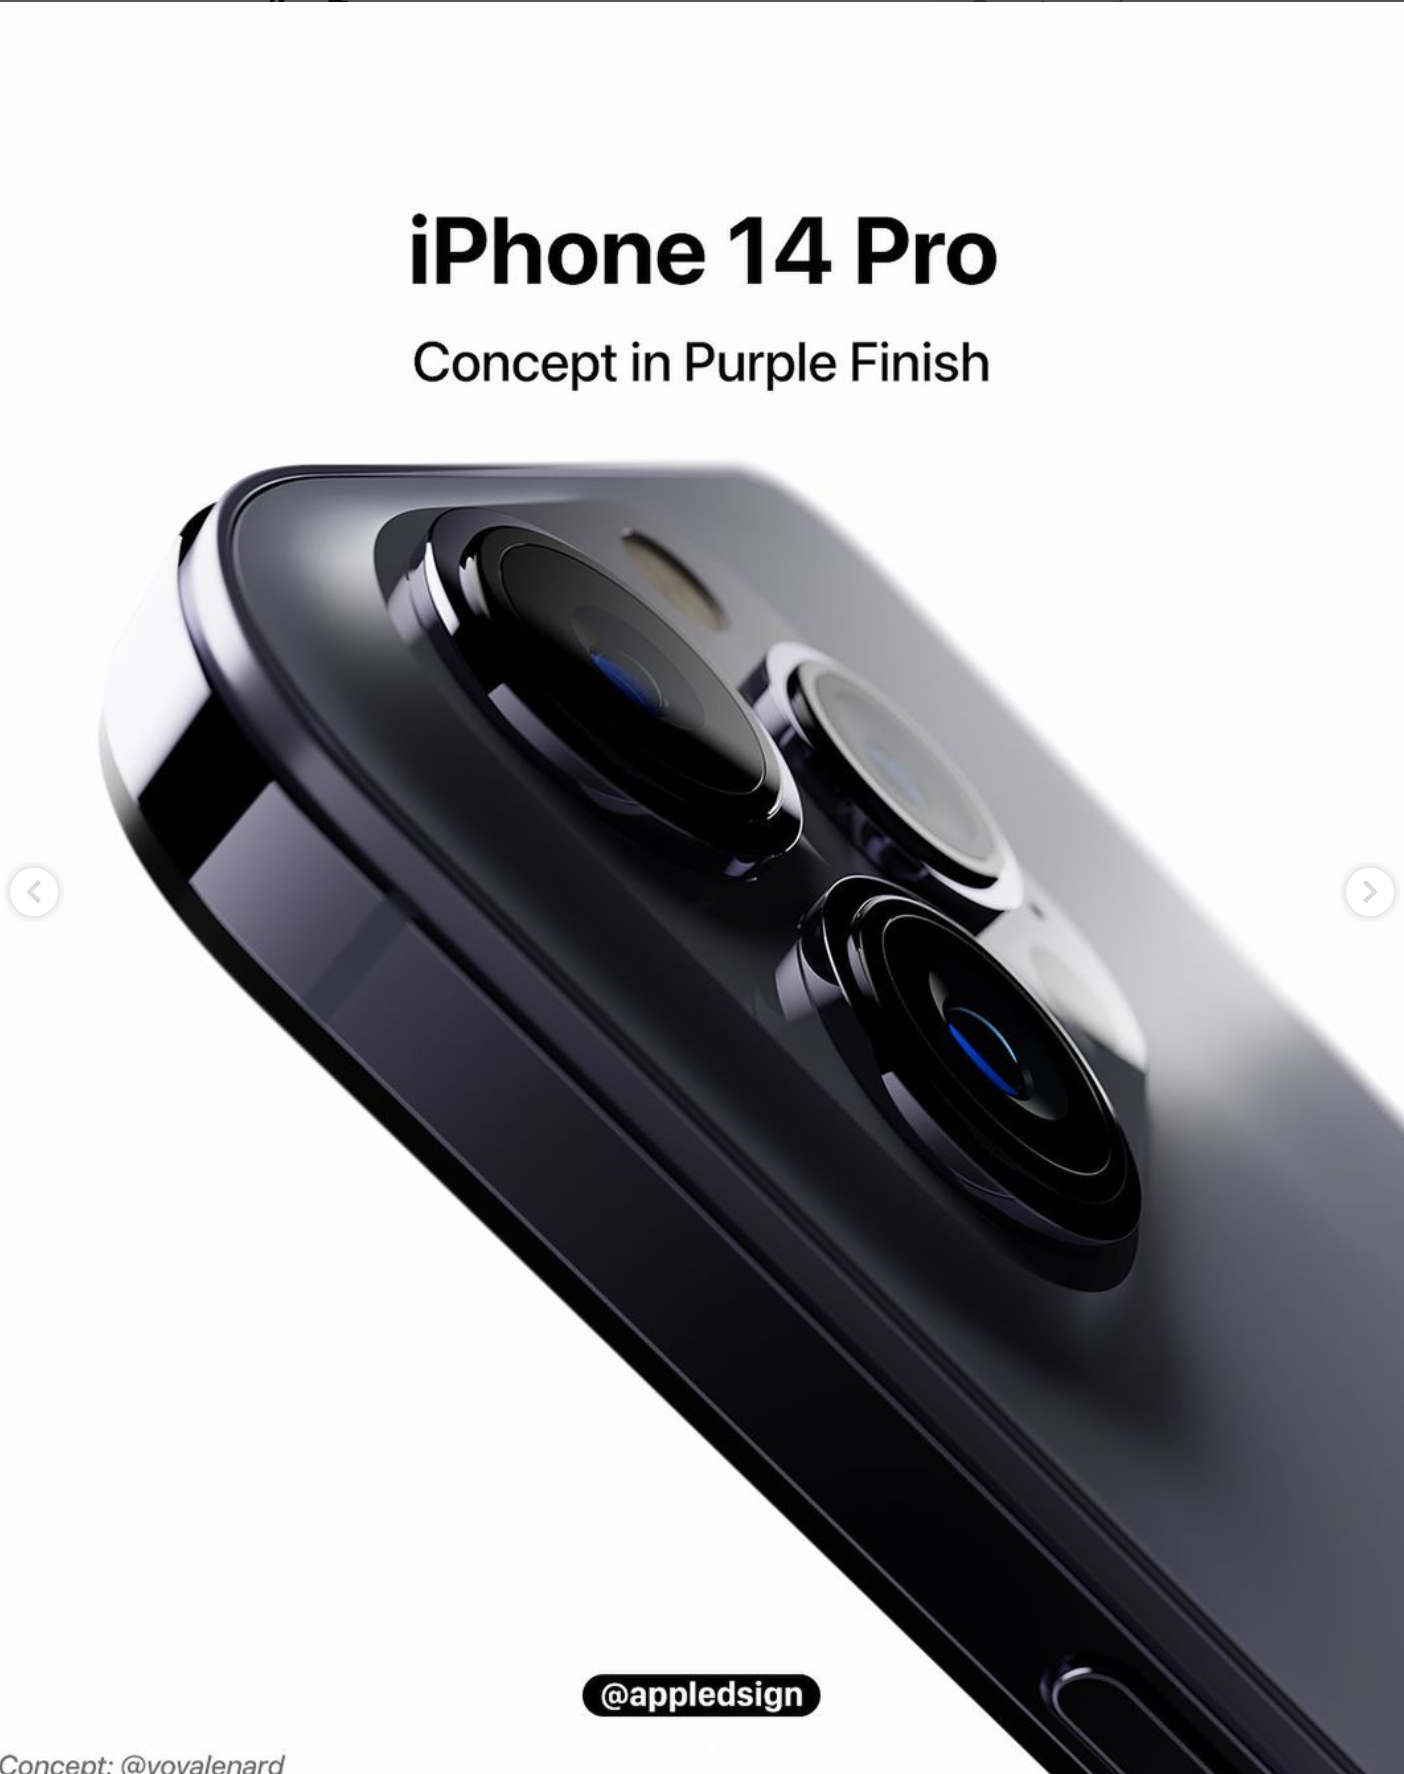 Rò rỉ hình ảnh iPhone 14 Pro màu tím pastel cực kỳ xinh nhưng sao không  mấy ai mặn mà